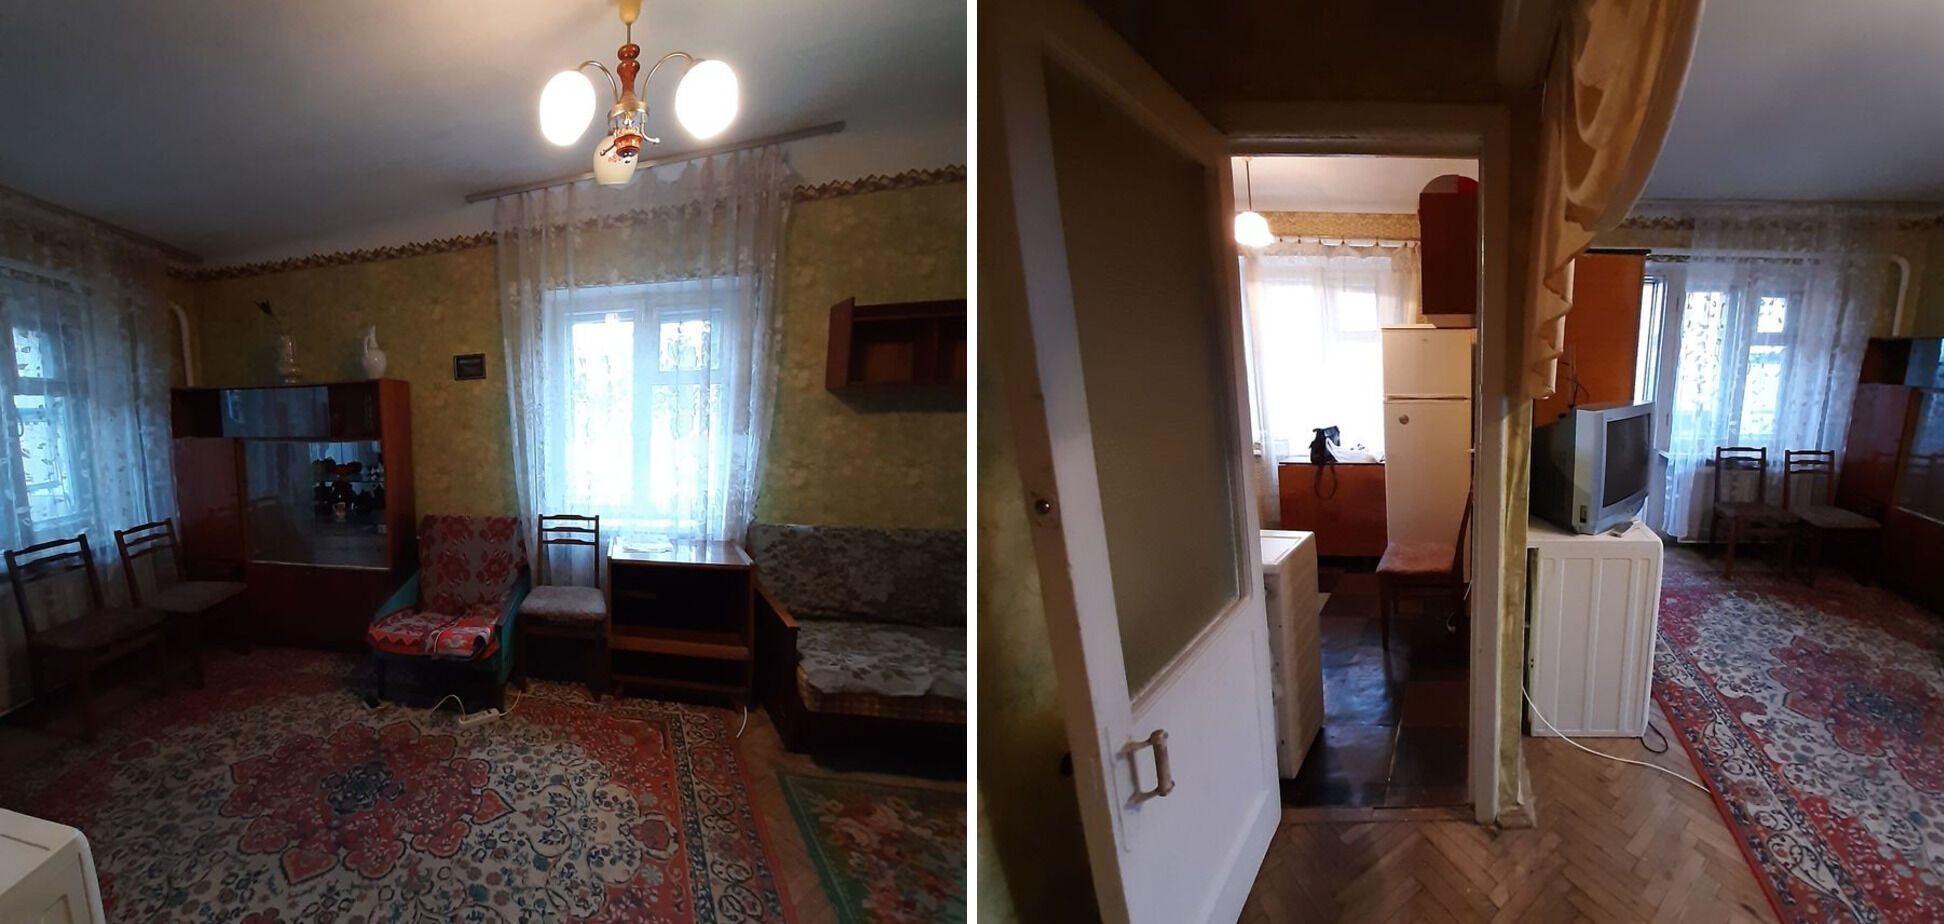 За 4 000 грн в месяц сдают квартиру в Подольском районе столицы